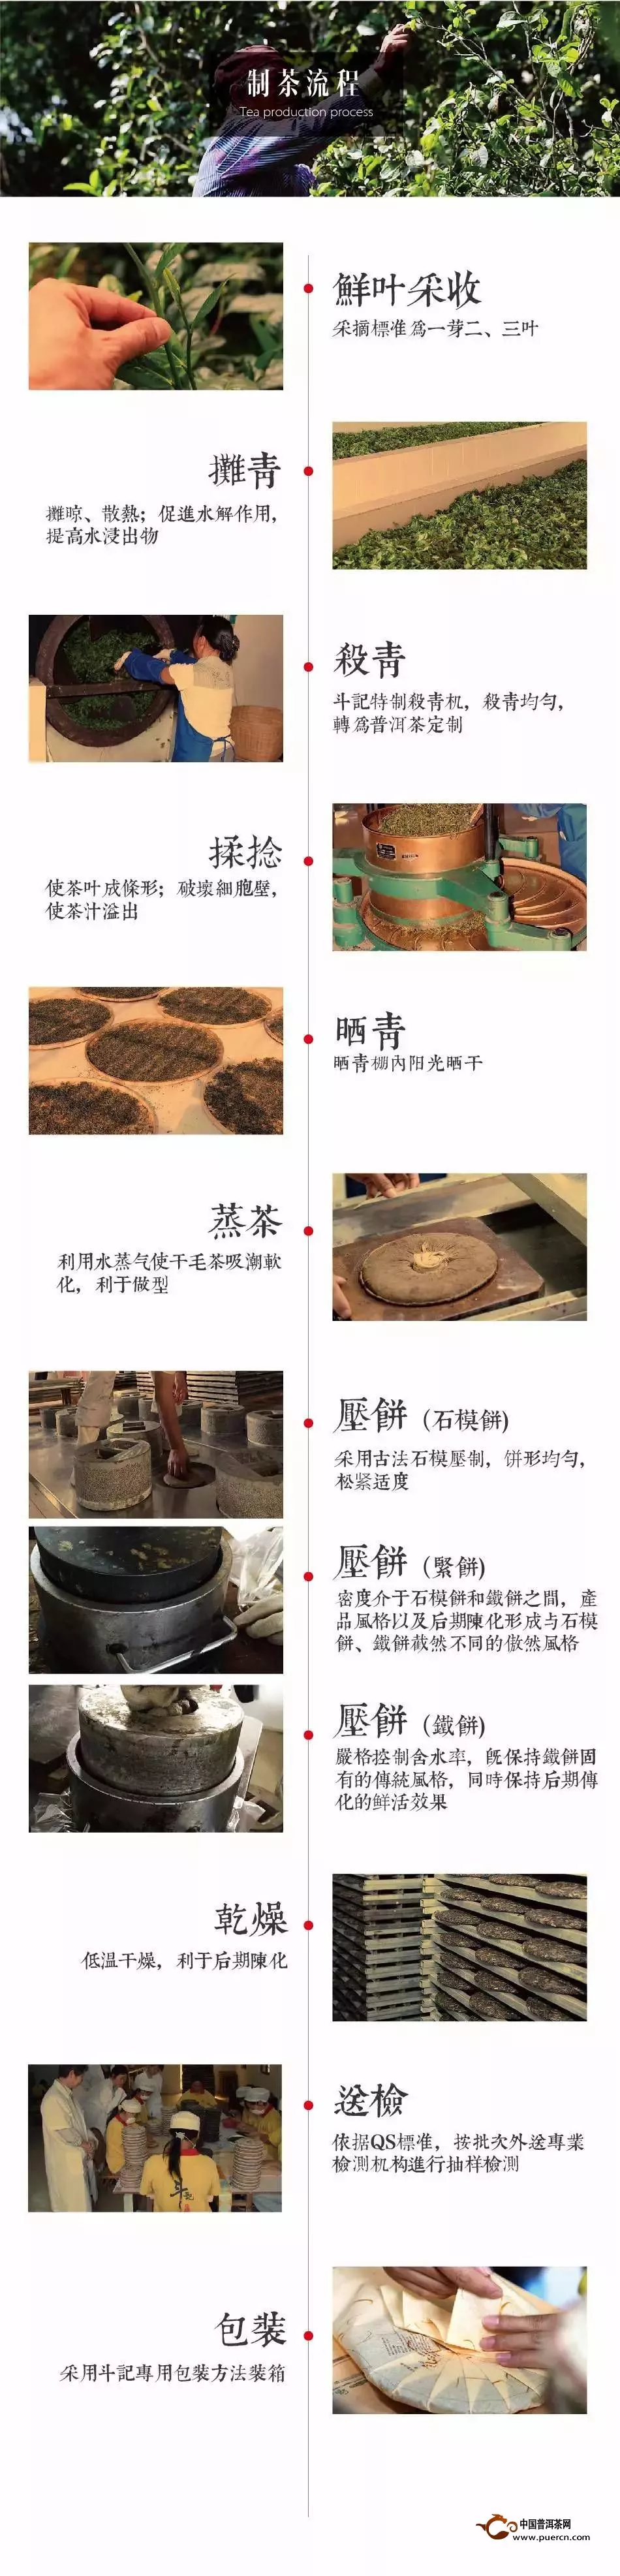 普洱茶饼制作流程图